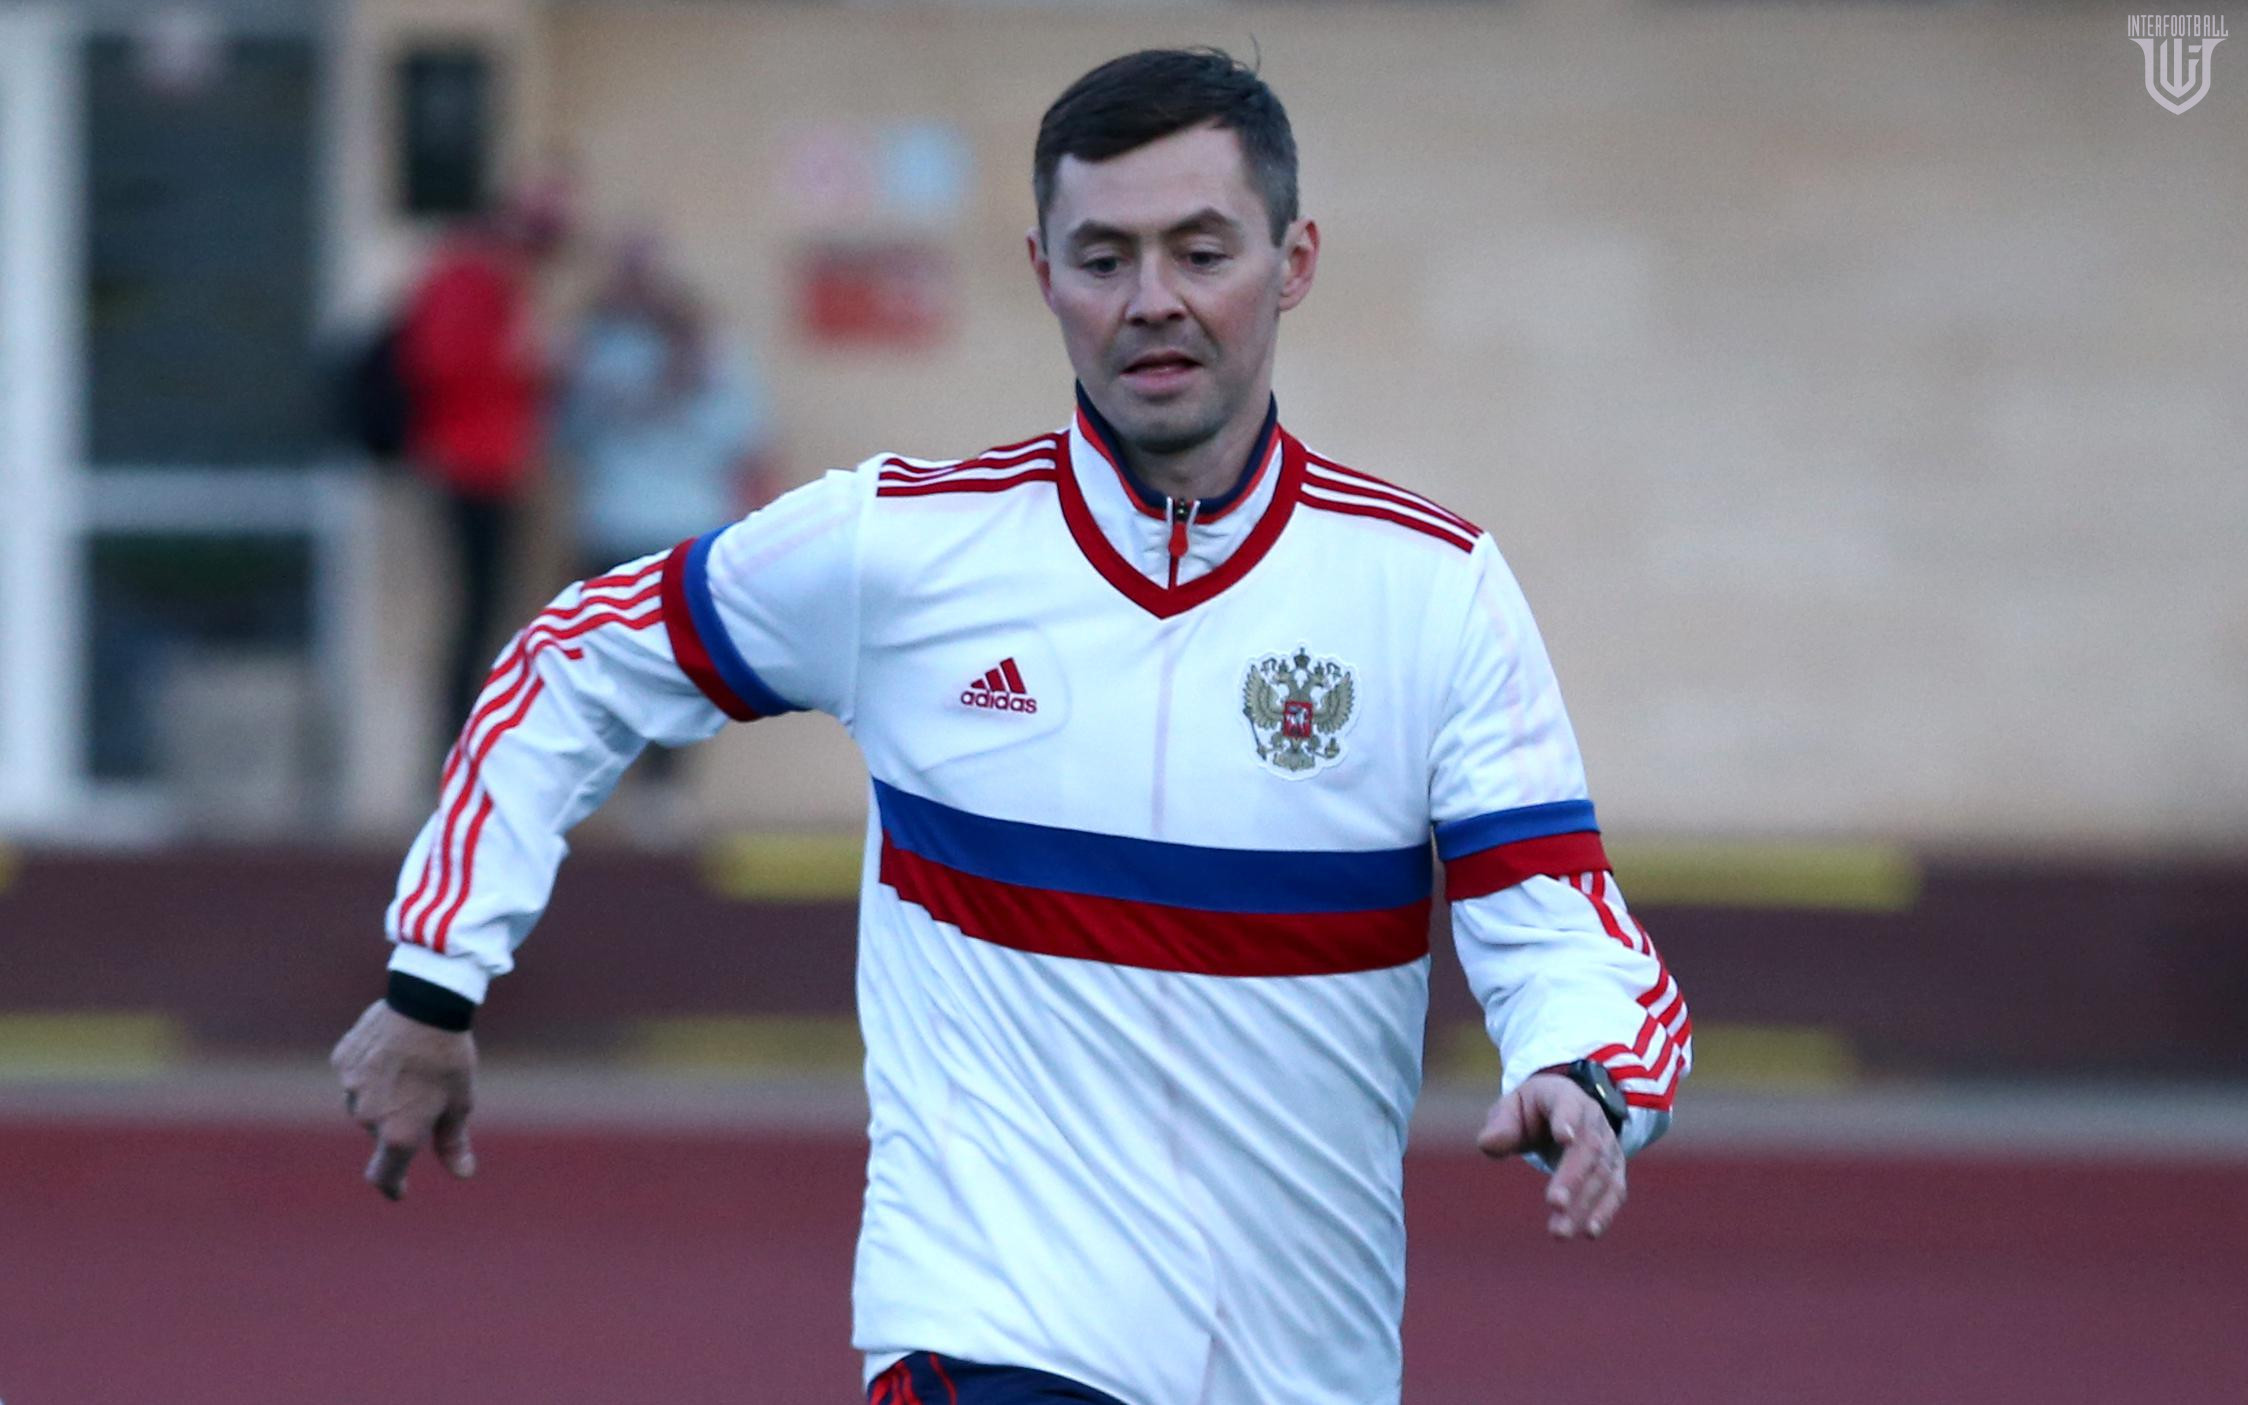 Ռուսաստանի հավաքականի նախկին ֆուտբոլիստը ծանուցագիր է ստացել` պատերազմ մեկնելու վերաբերյալ